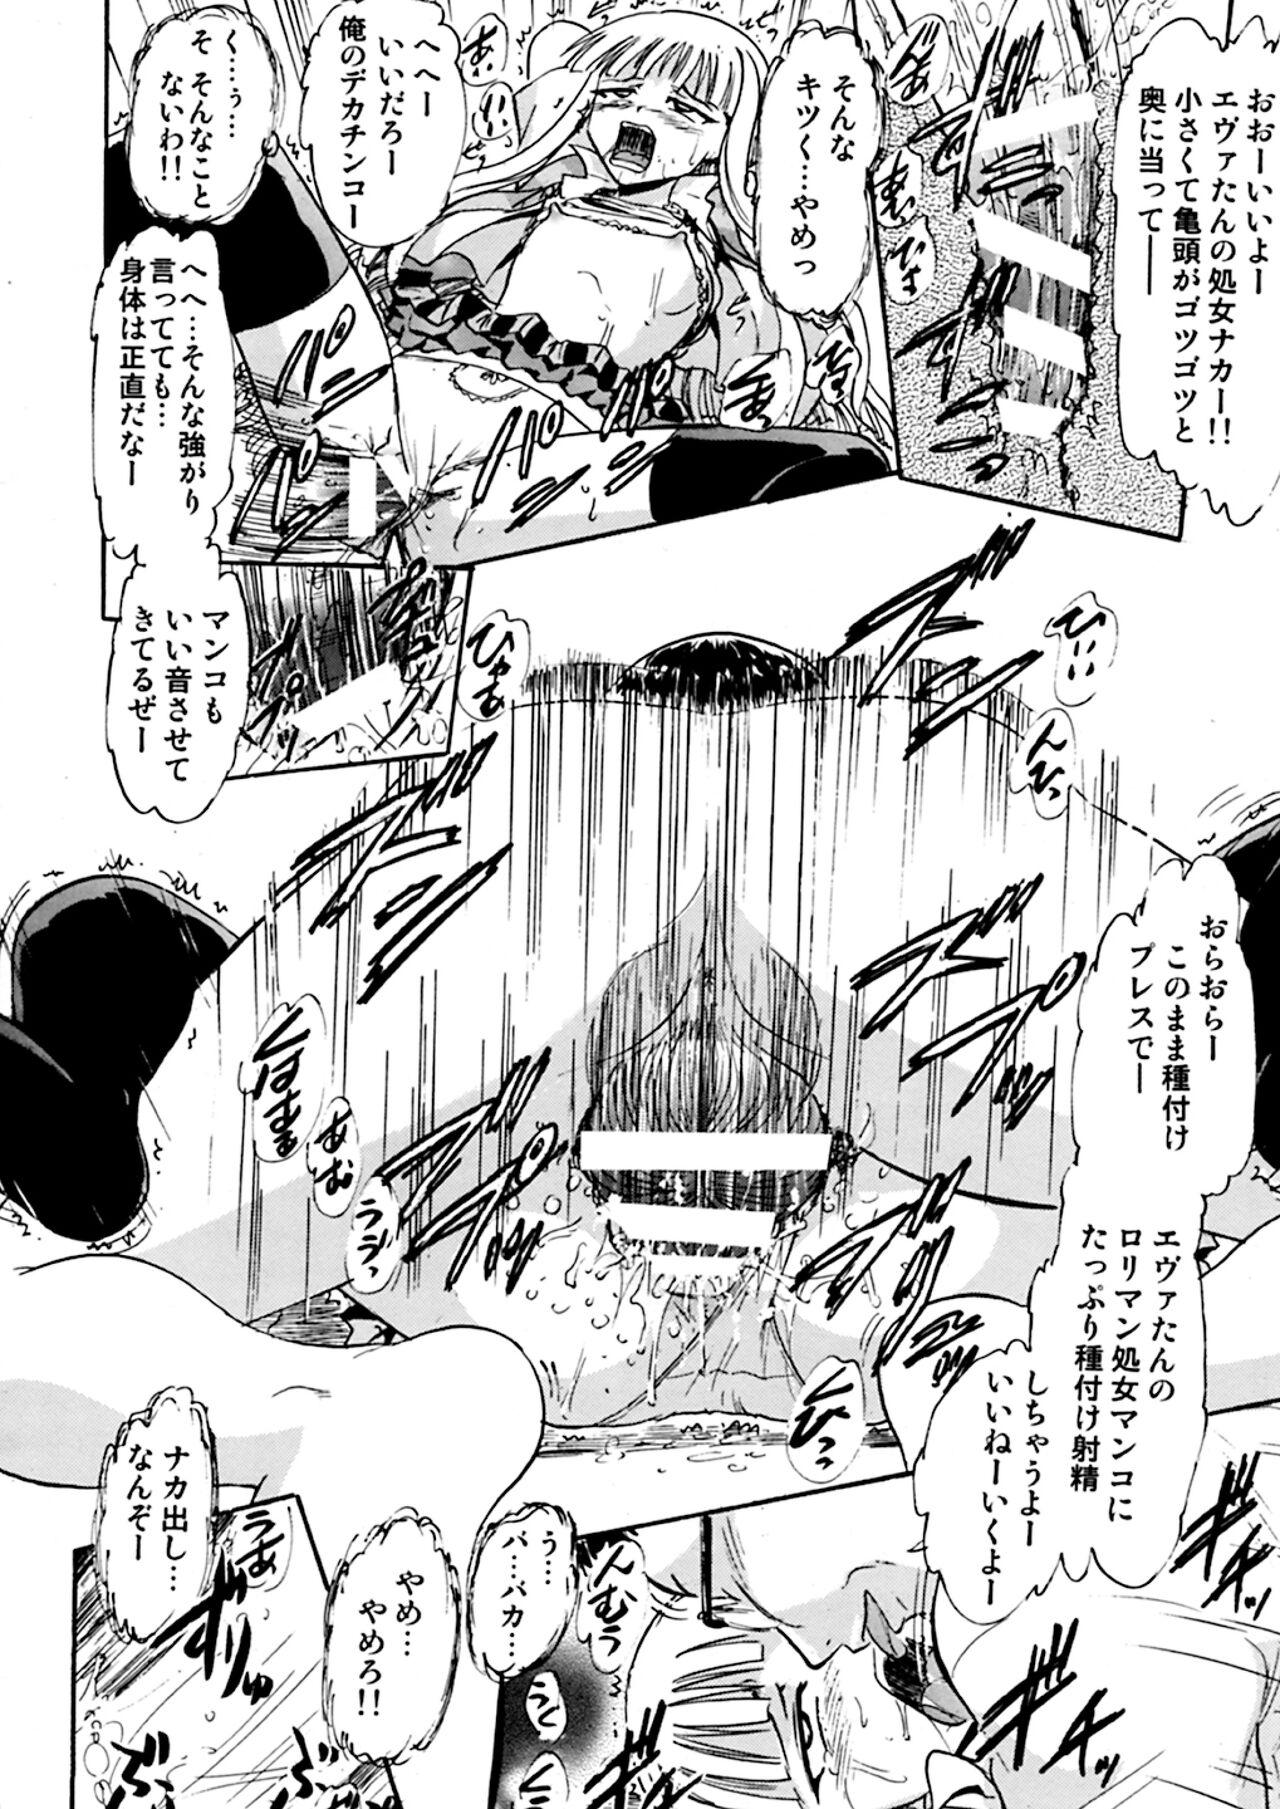 Sub Kugutsu no Eva-tan - Mahou sensei negima Shesafreak - Page 9